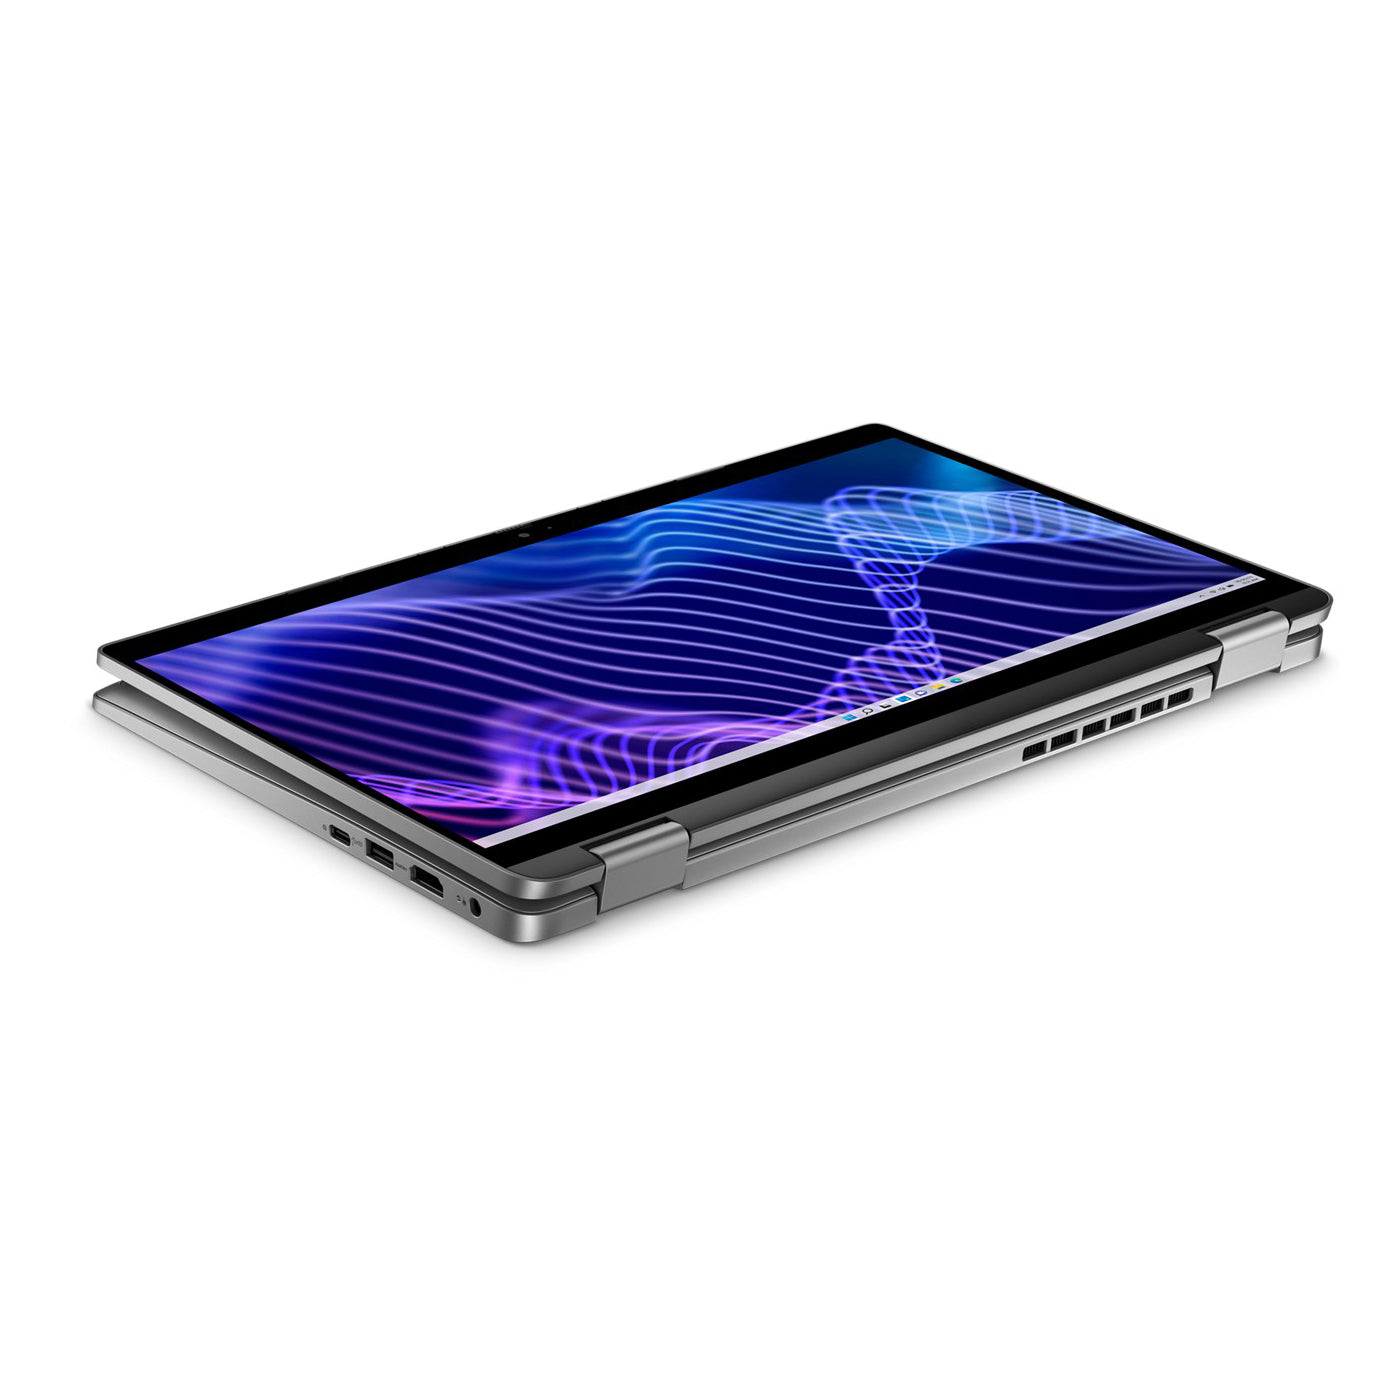 Dell Latitude 3340 13 inch 2-in-1 Touchscreen